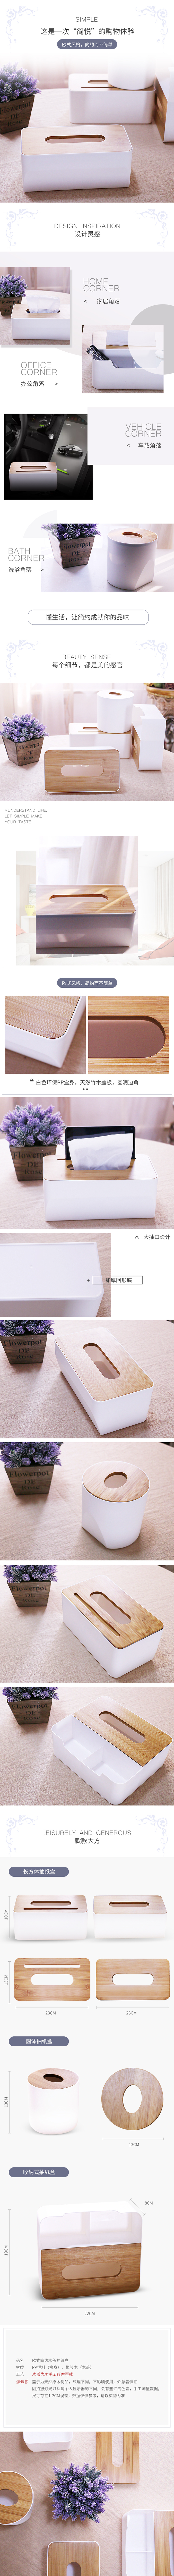 淘宝美工y221699欧式简约木盖抽纸盒 详情页作品